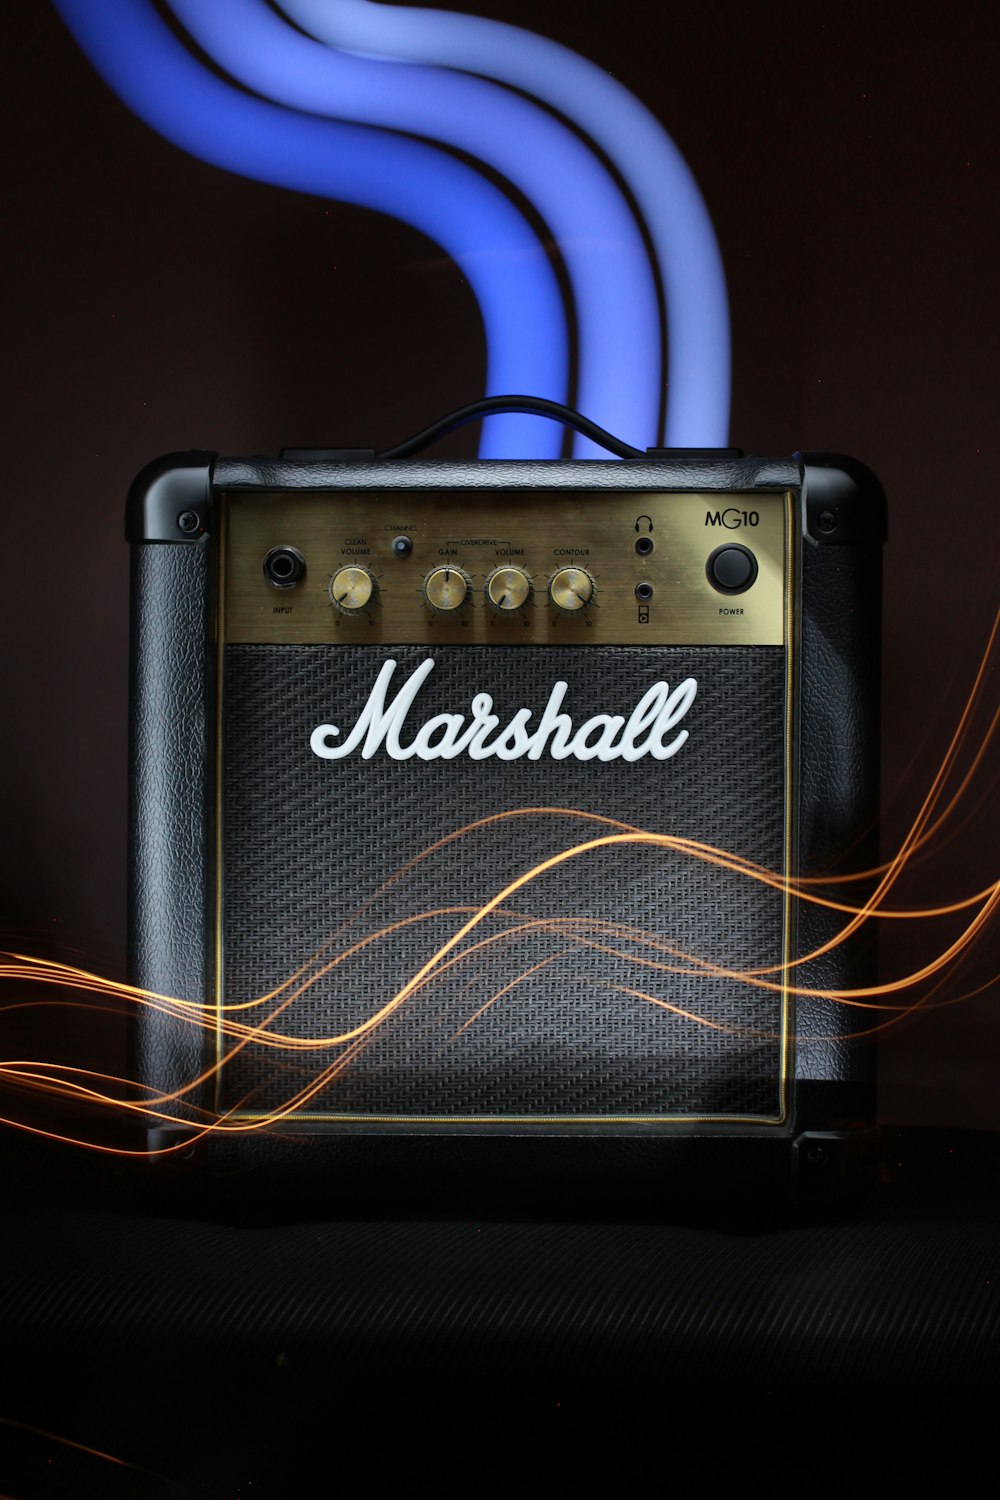 Imágenes de Amplificador Marshall | Descarga imágenes gratuitas en Unsplash